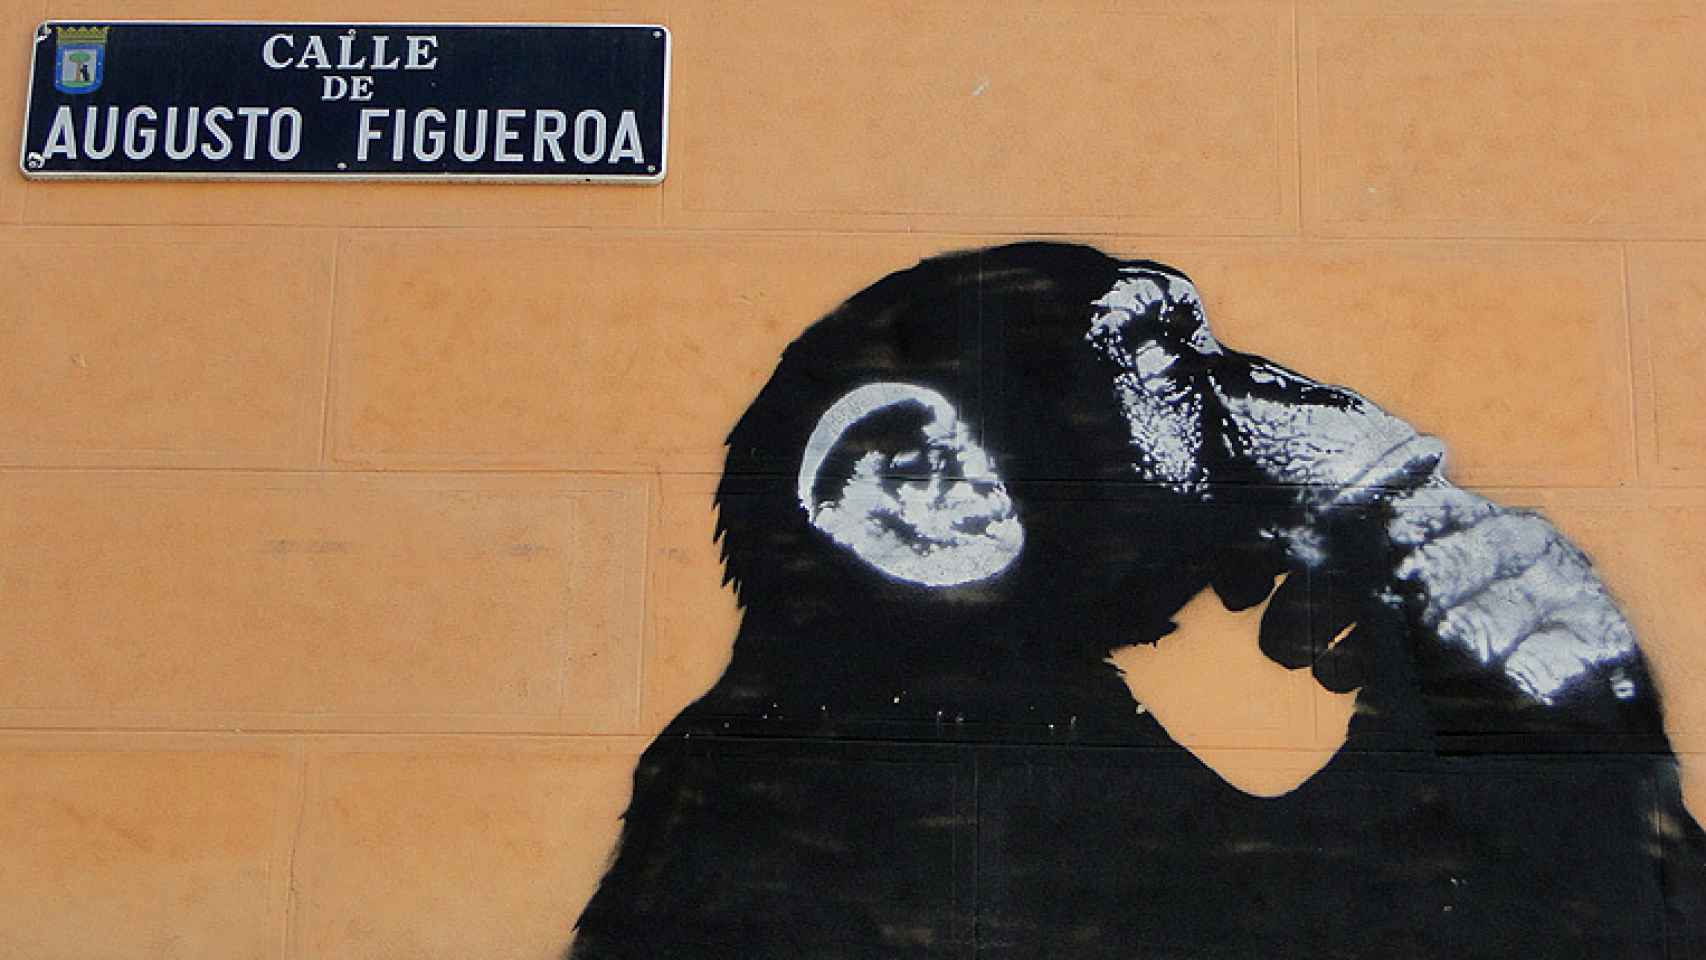 El chimpancé de ¿En qué piensan los políticos?, de Noaz, al lado del rótulo de la calle.